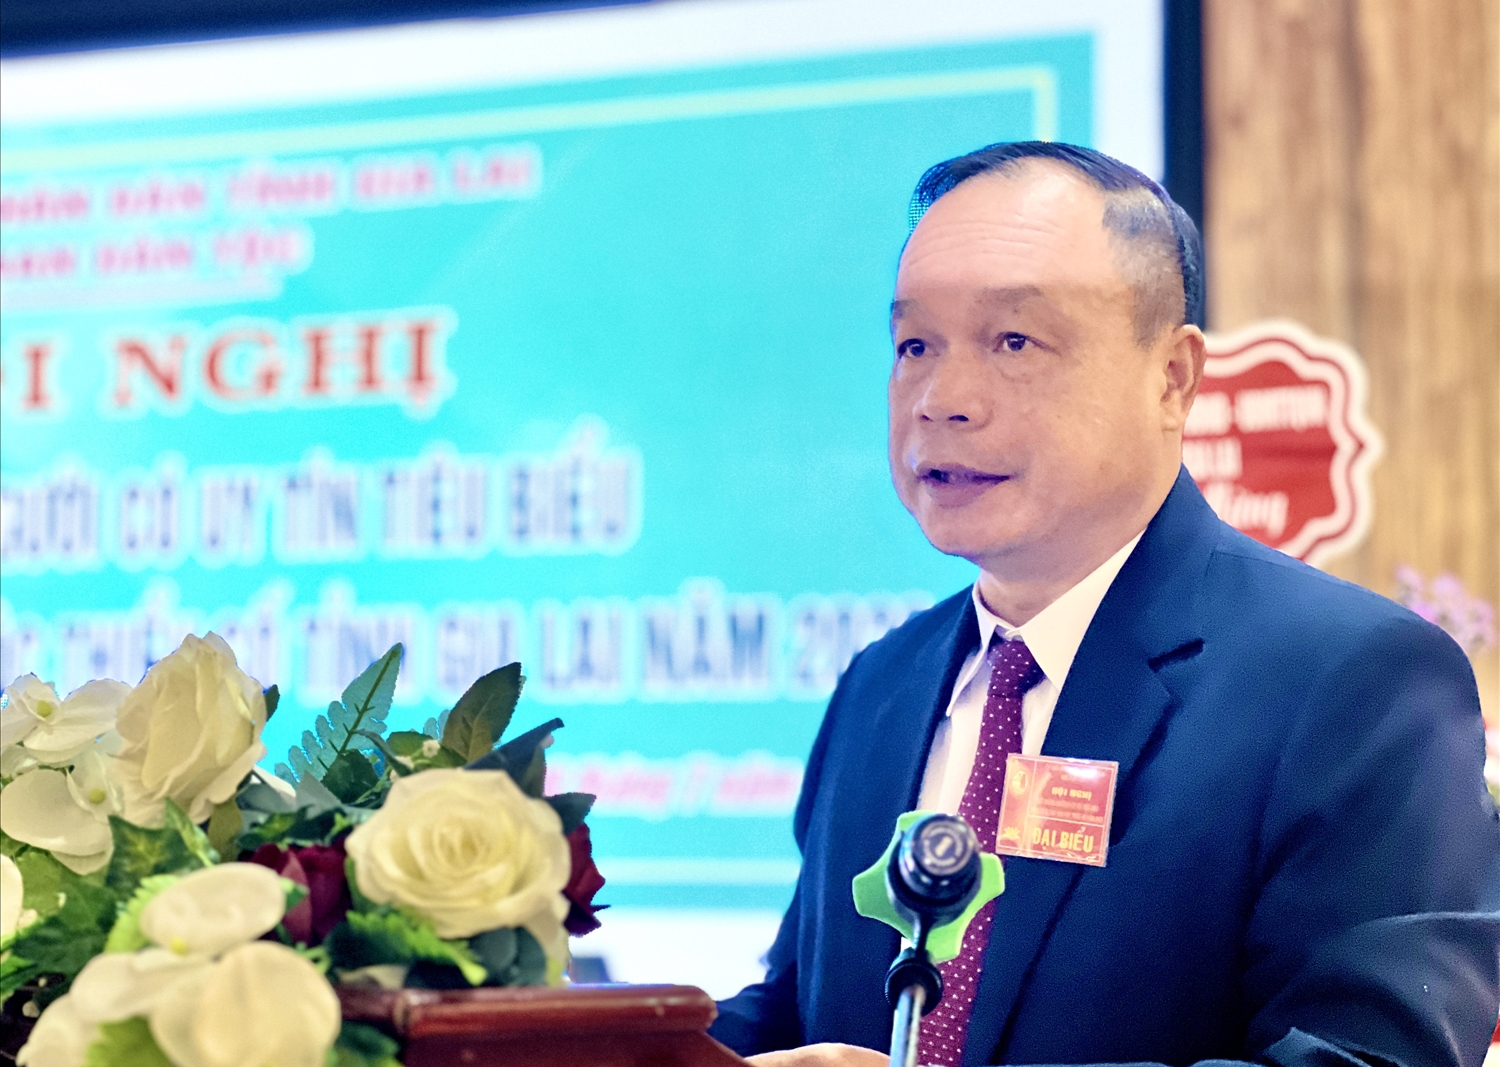 Ông Dương Mah Tiệp - Phó Chủ tịch UBND tỉnh Gia Lai biểu dương, ghi nhận những đóng góp của đội ngũ Người có uy tín tại các thôn làng